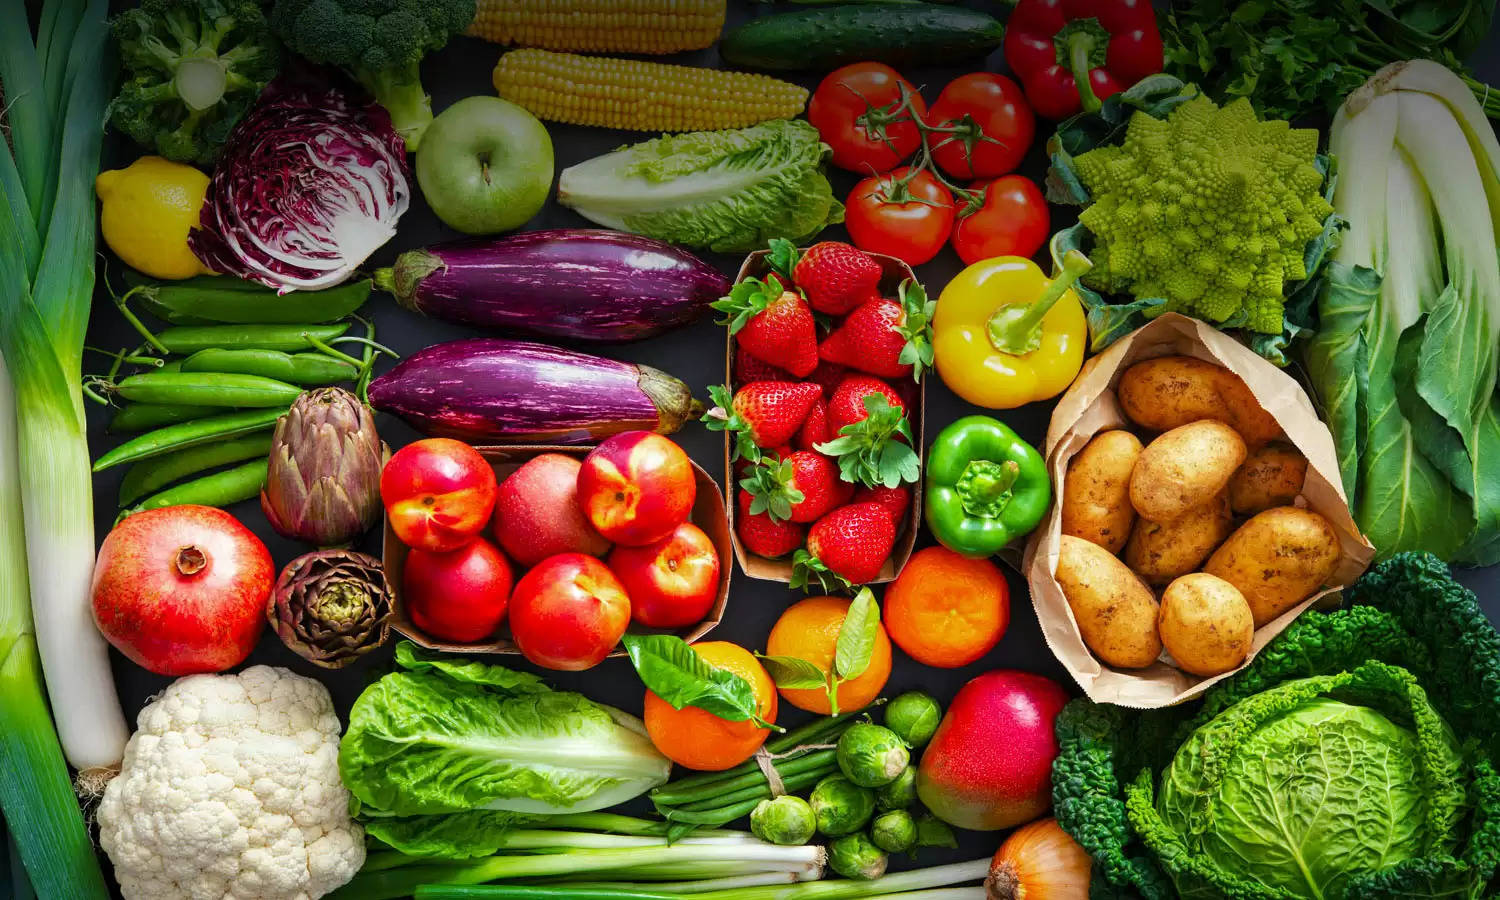 Vegetable Price Hike: आम आदमी को झटका, सब्जियों के दाम में हुआ इजाफा, टमाटर 40 तो मटर पहुंचा 100 रुपये प्रति किलो